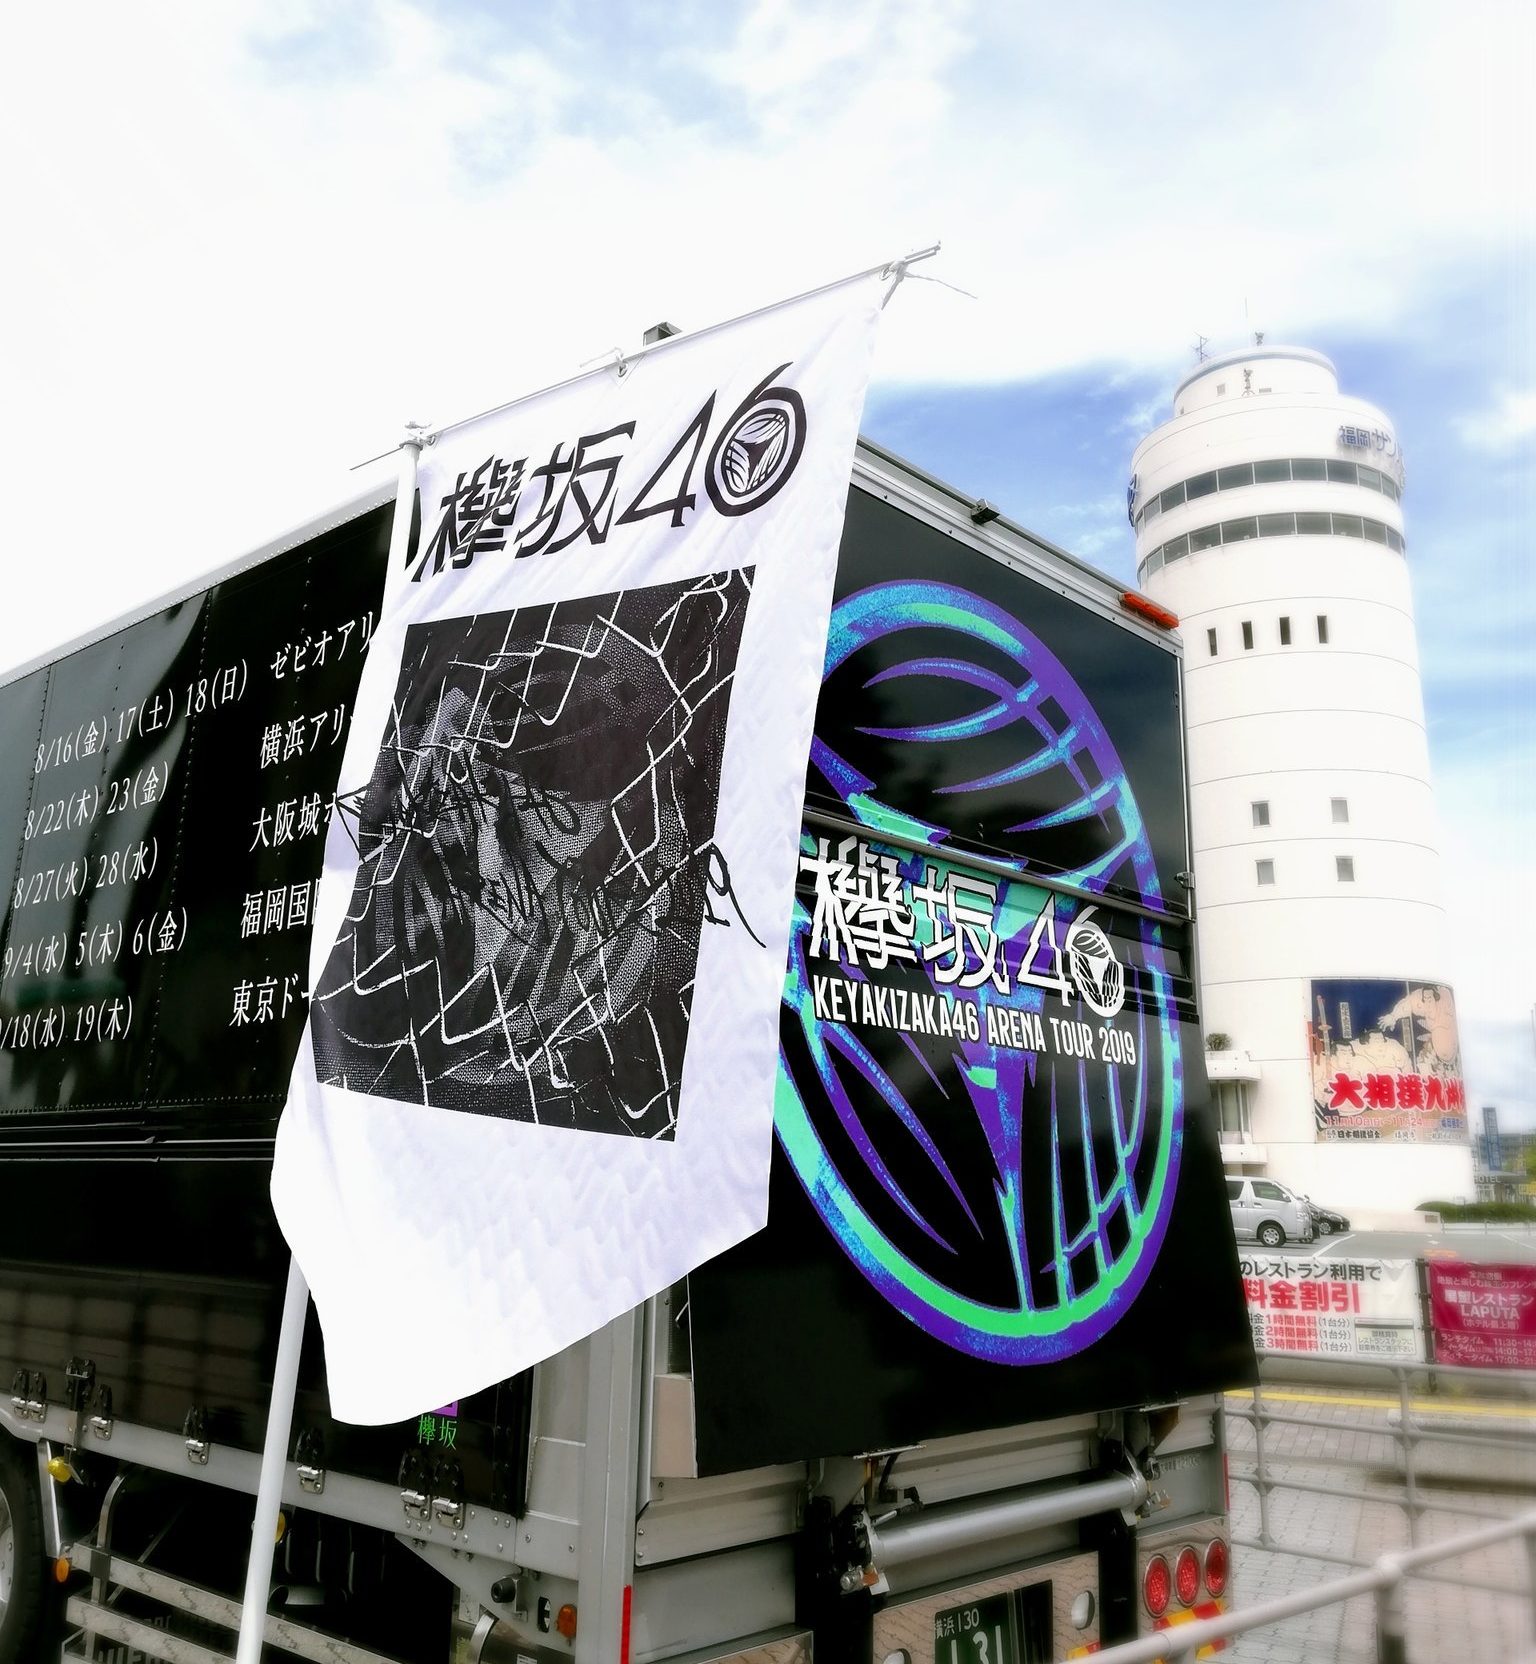 欅坂46 博多 福岡国際センター 座席 セトリ 影ナレ 夏の全国アリーナツアー19 レポ Tlクリップ